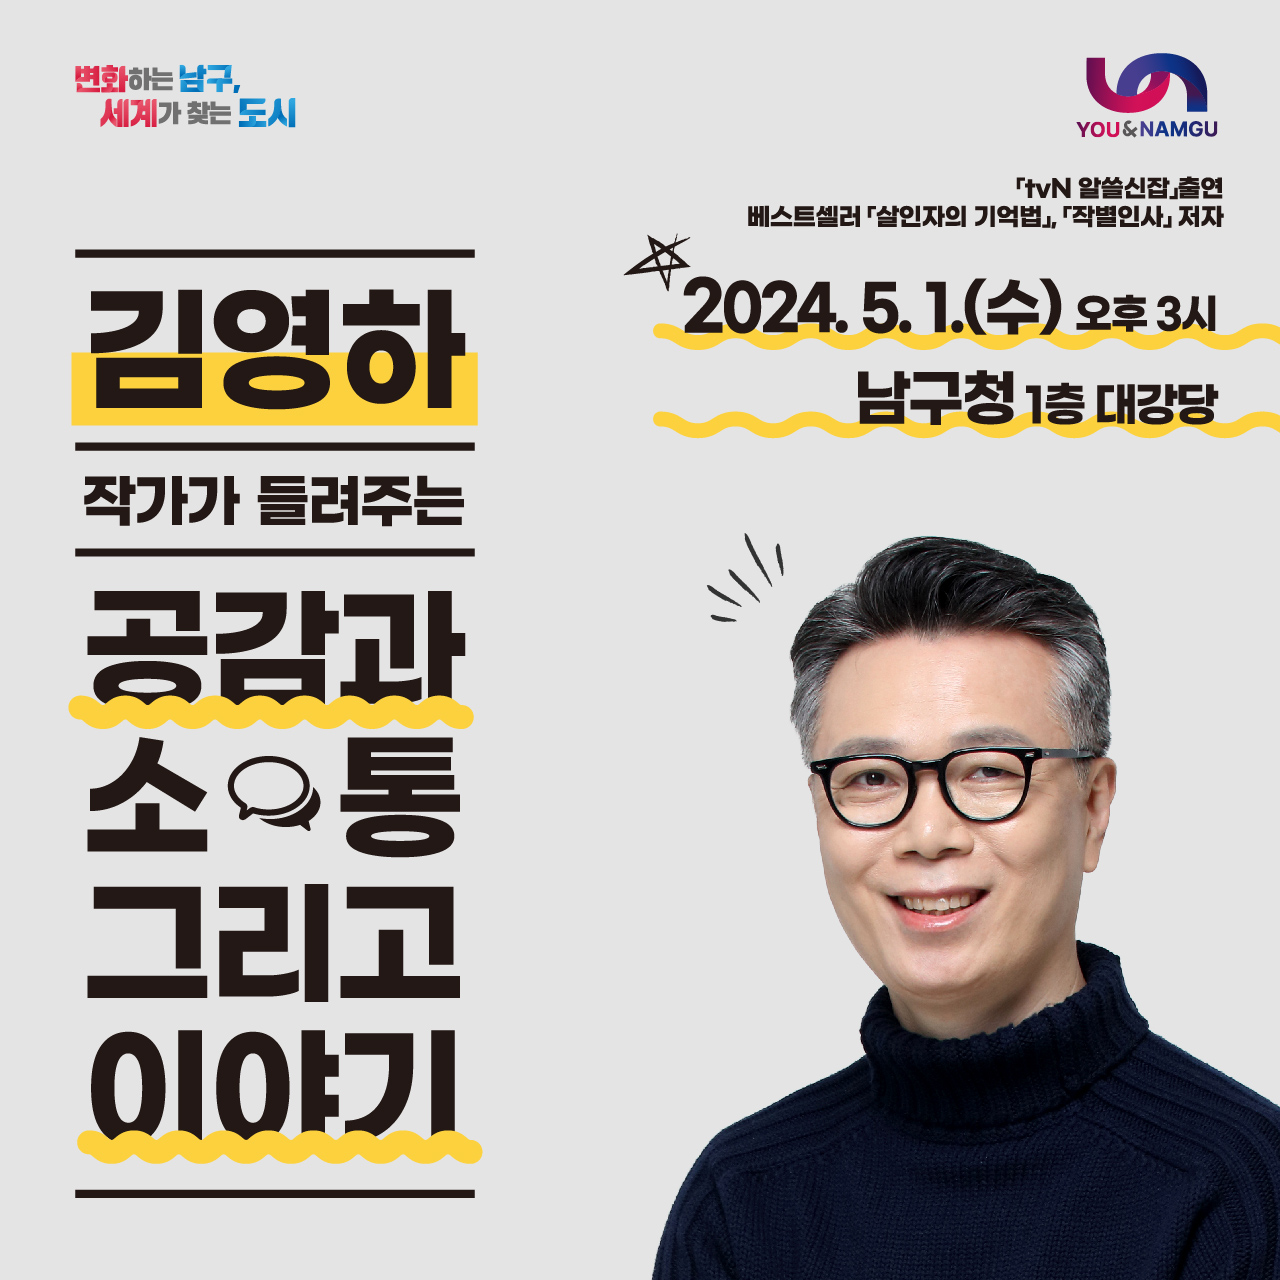 김영하 작가 초청 강연회 개최